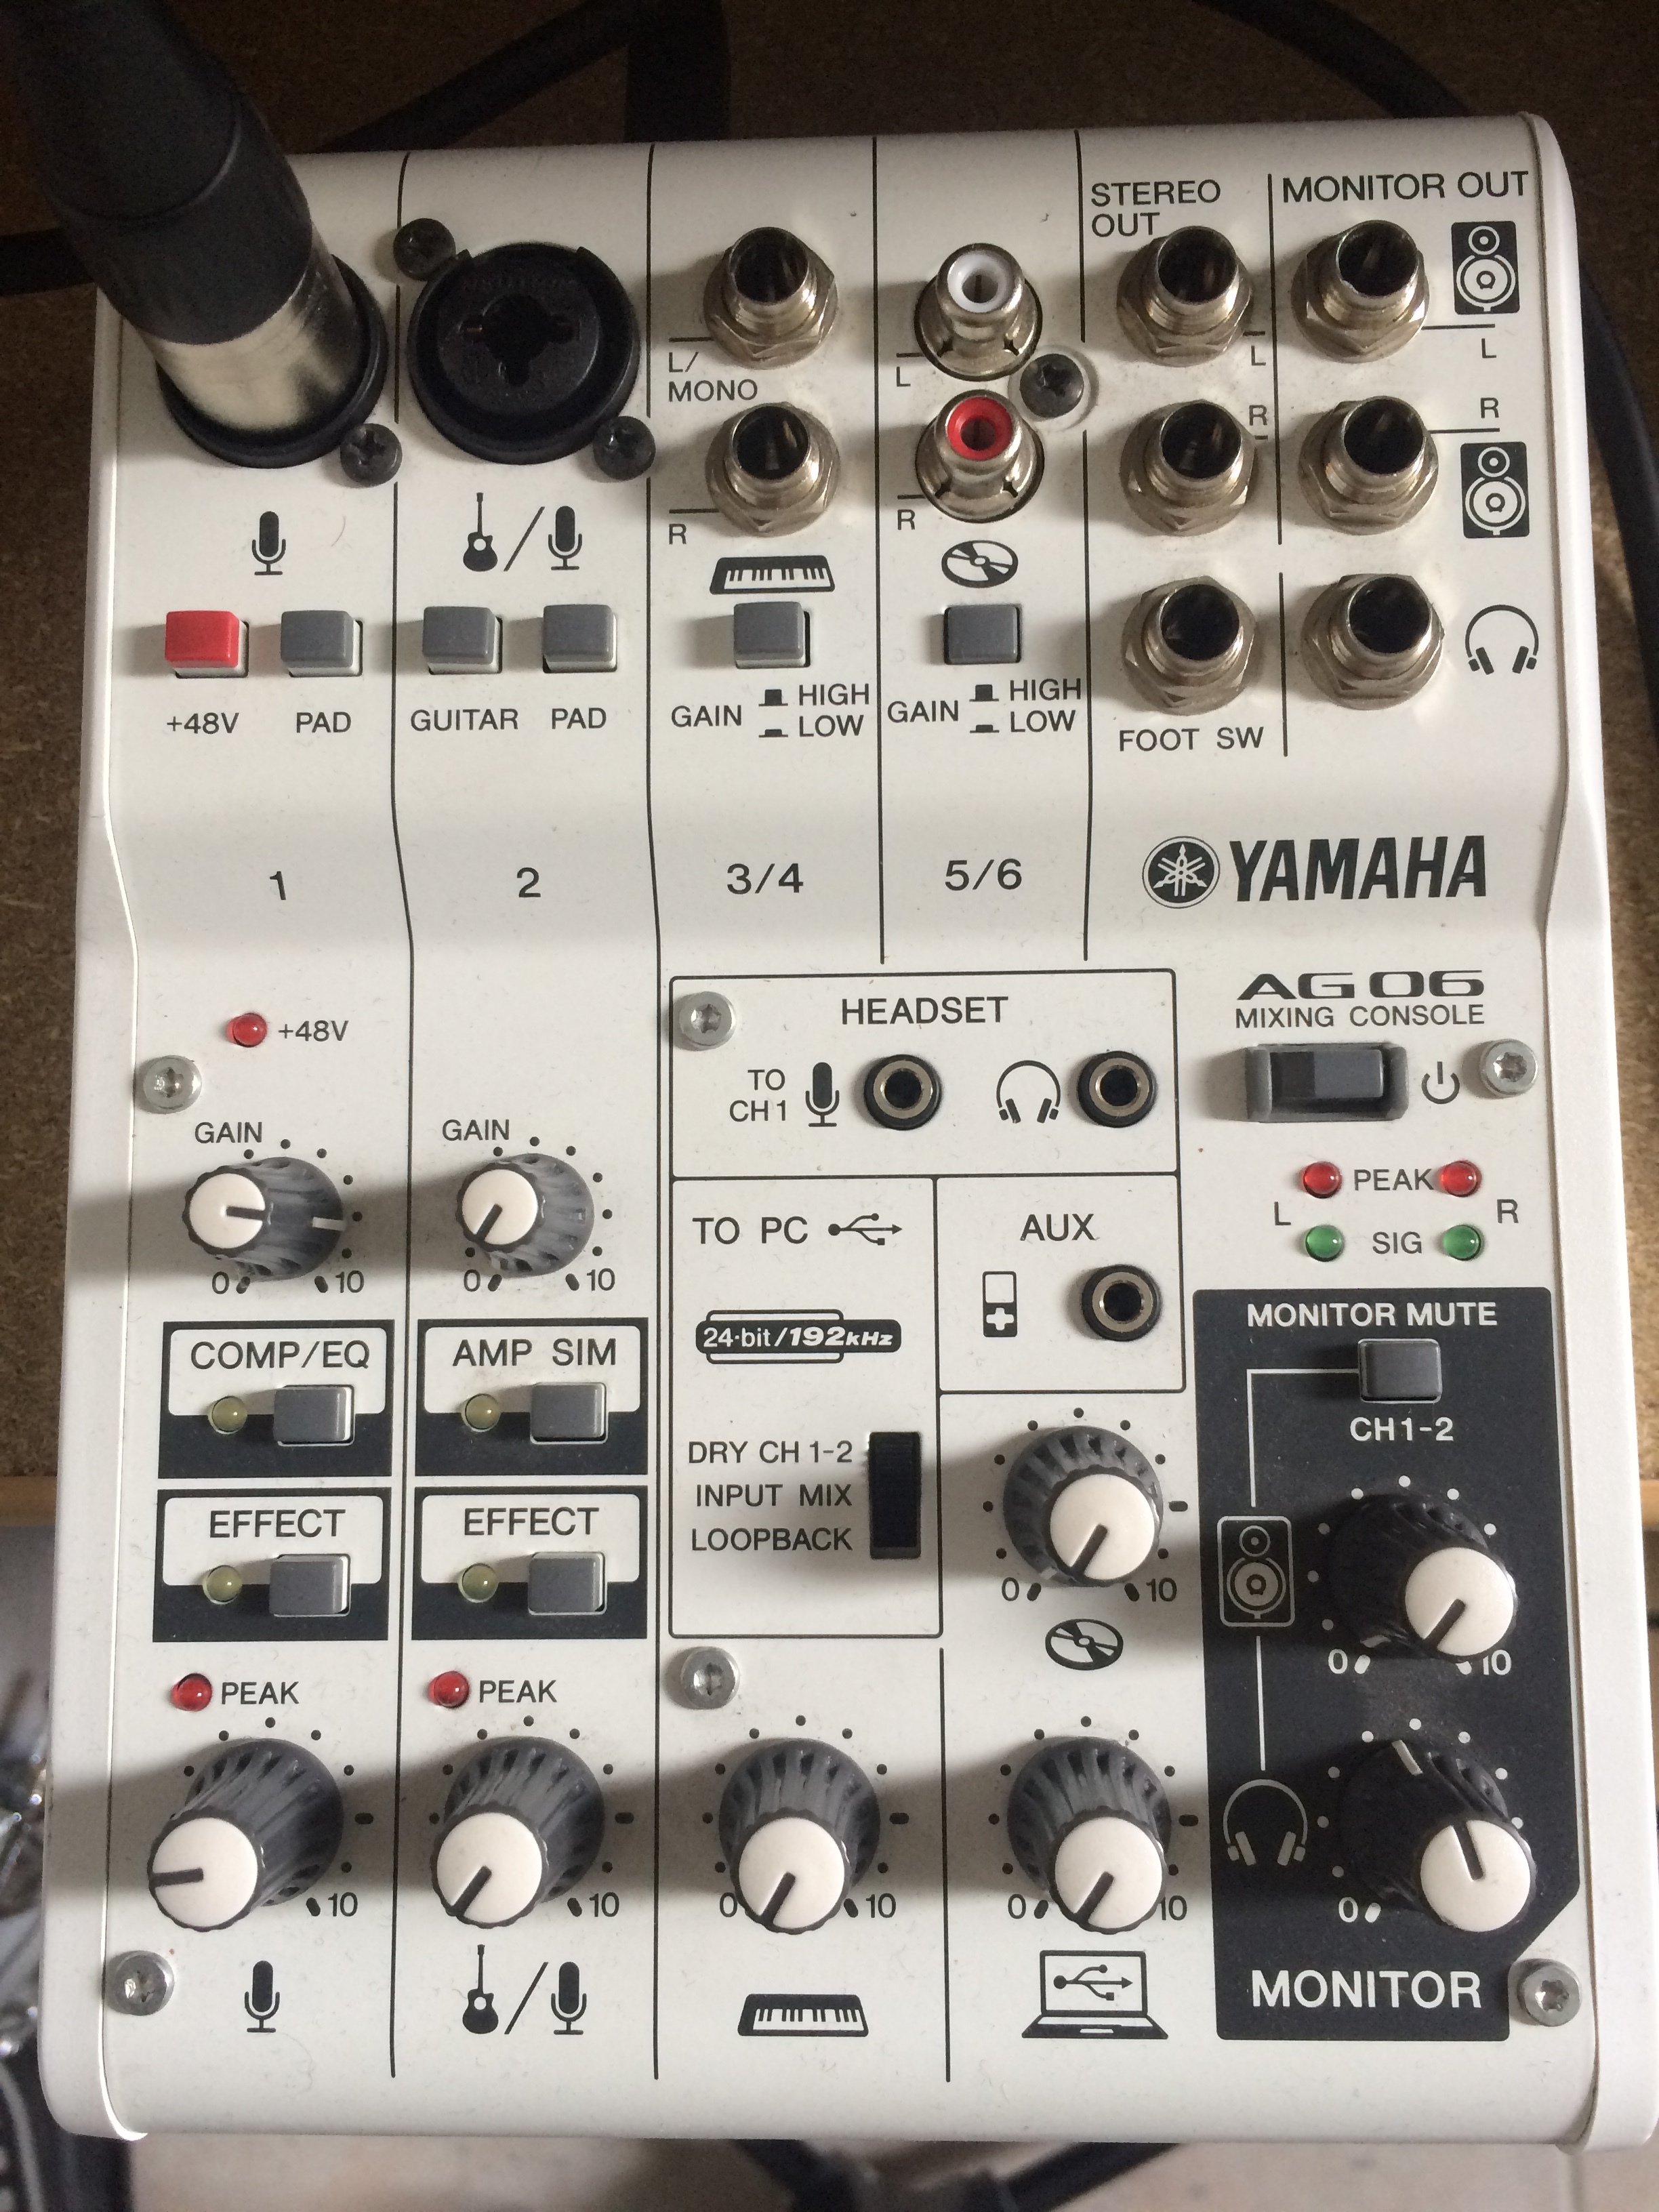 AG06 - Yamaha AG06 - Audiofanzine